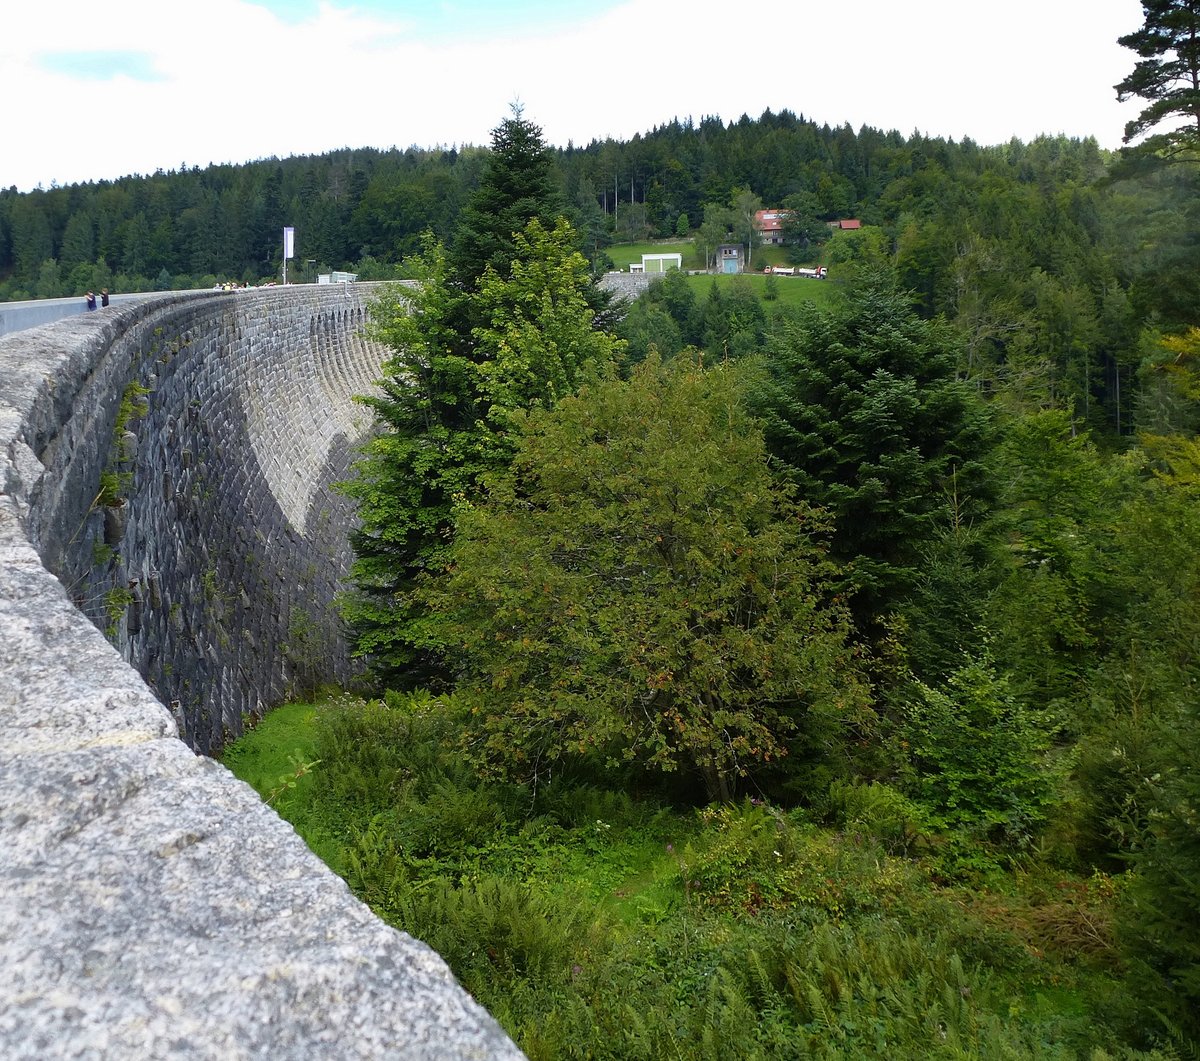 Schwarzenbachtalsperre im Nordschwarzwald, Blick auf die Gewichtsstaumauer, 65m hoch, 400m lang erbaut 1922-26, Aug.2017